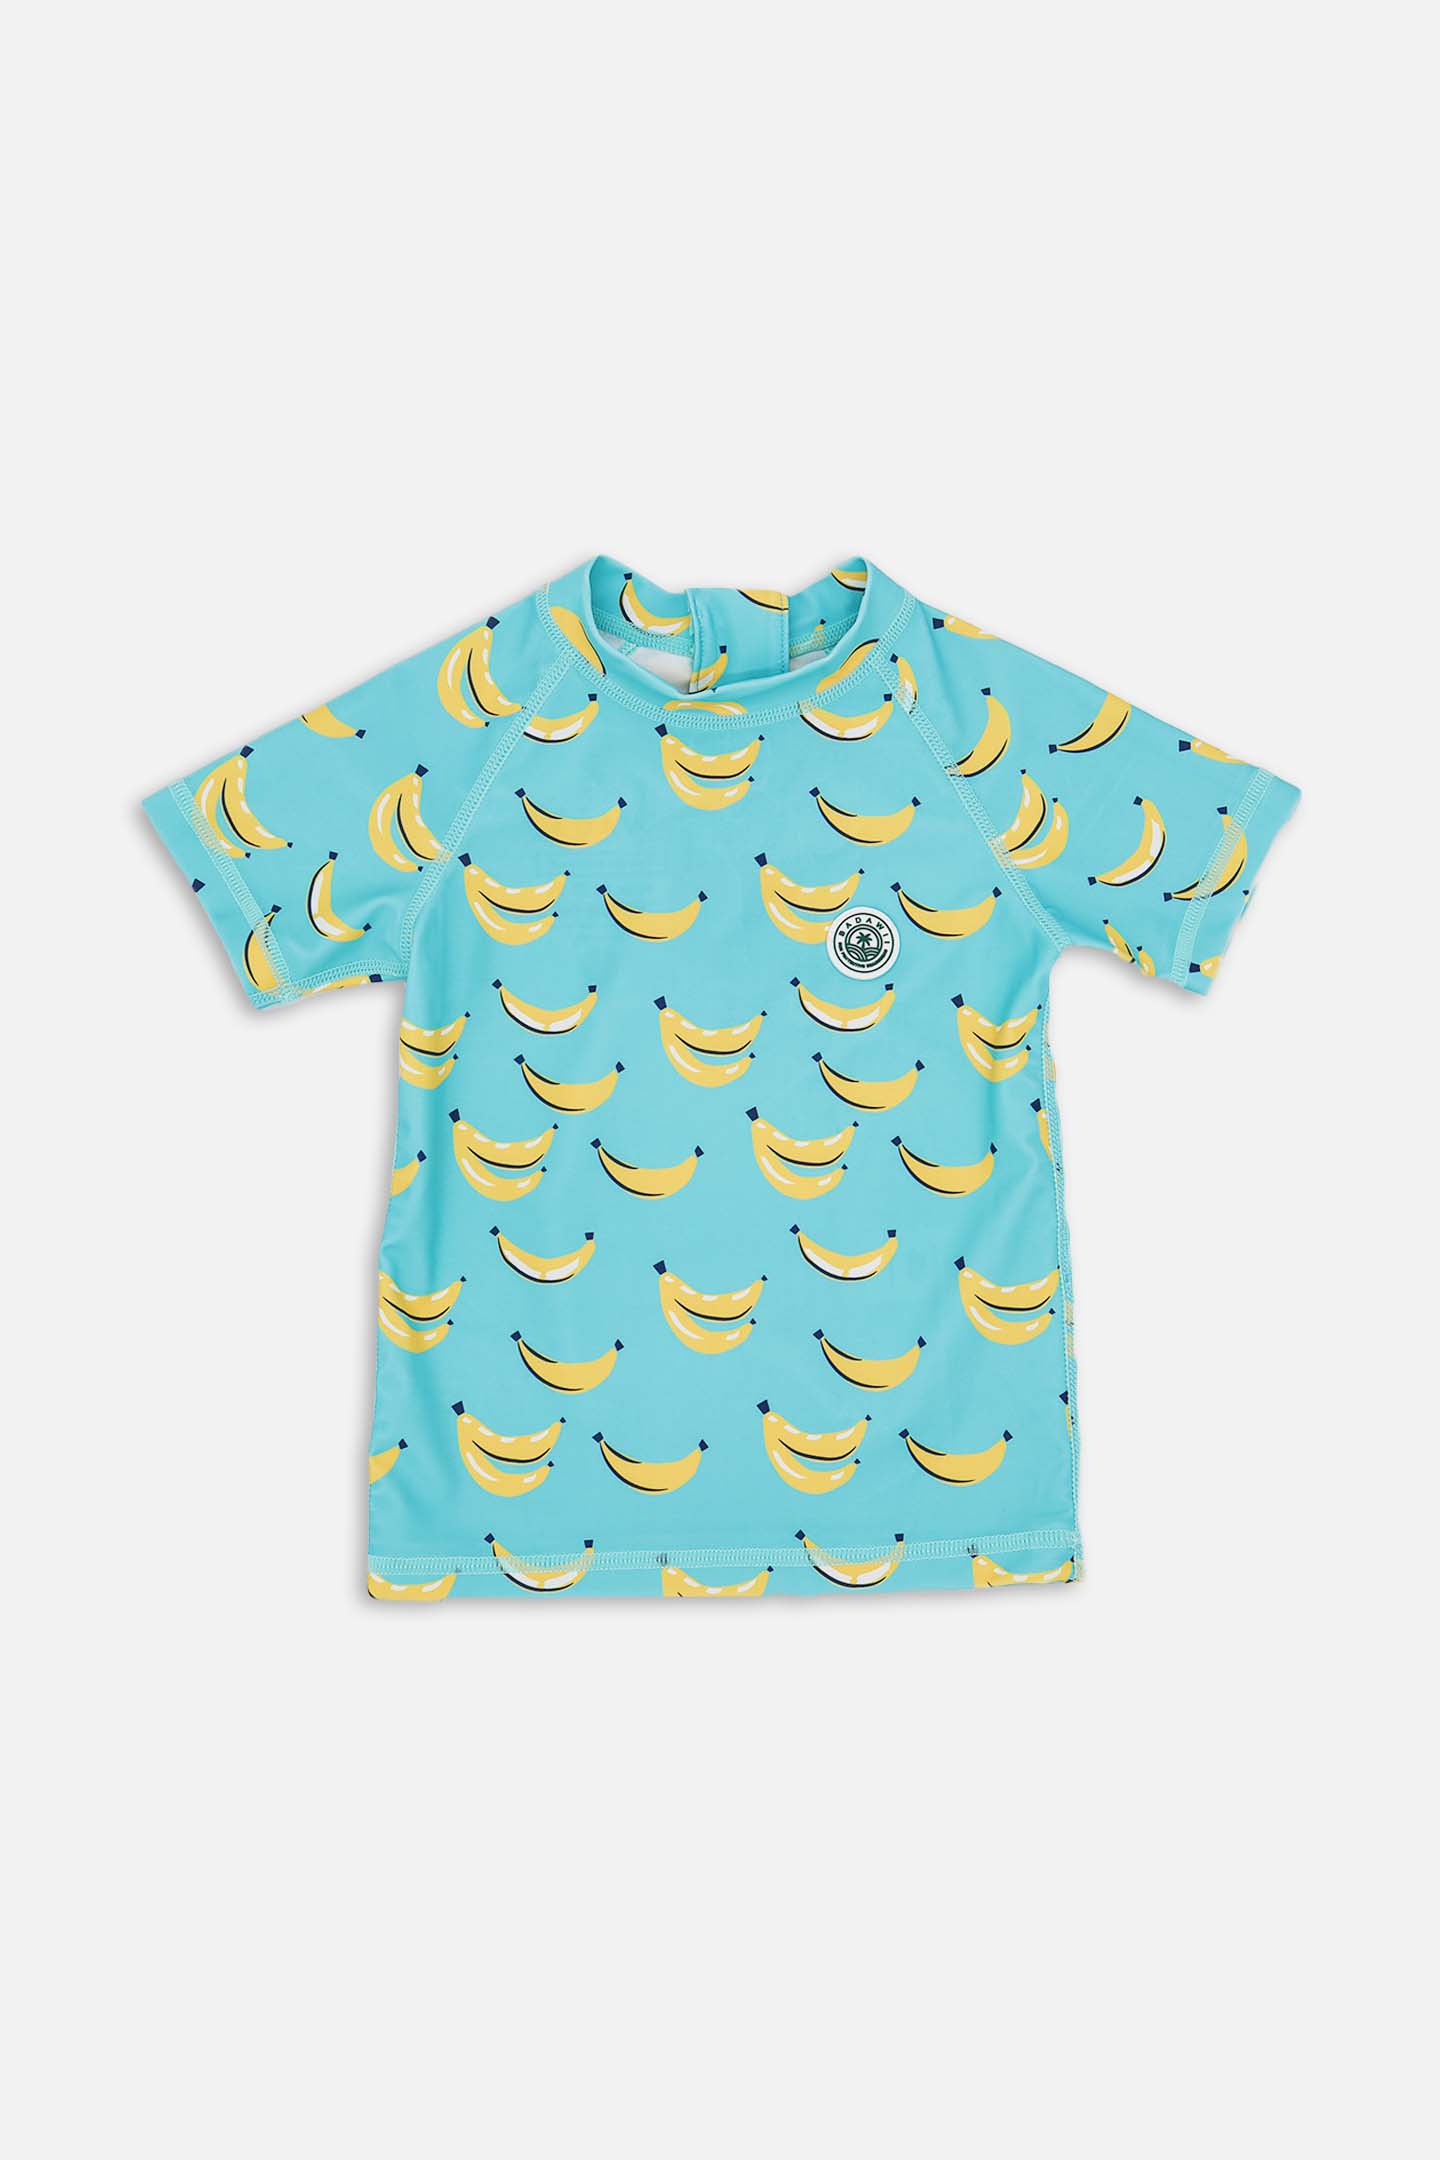 Short Sleeve Rashie - Bananas Blue